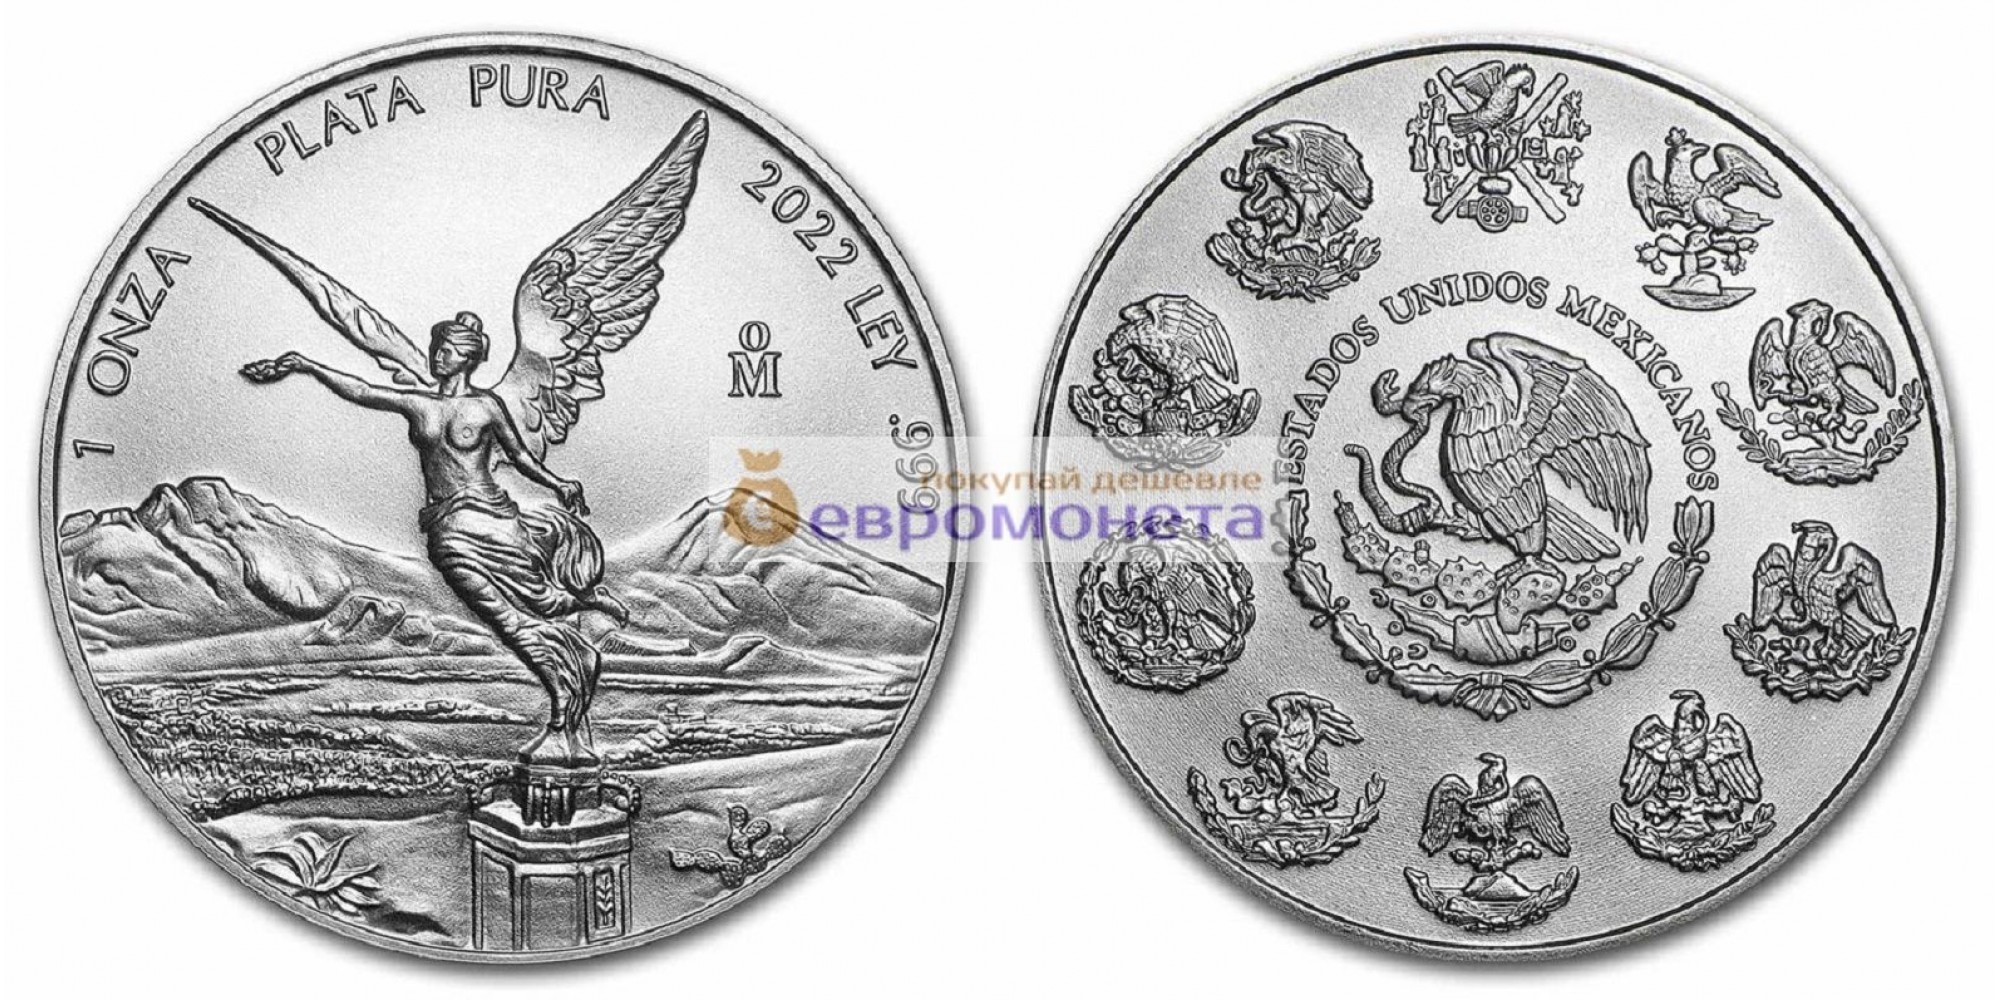 Мексика 1 онза 2022 год Серебряная инвестиционная монета "Свобода". Унция серебра 999 пробы